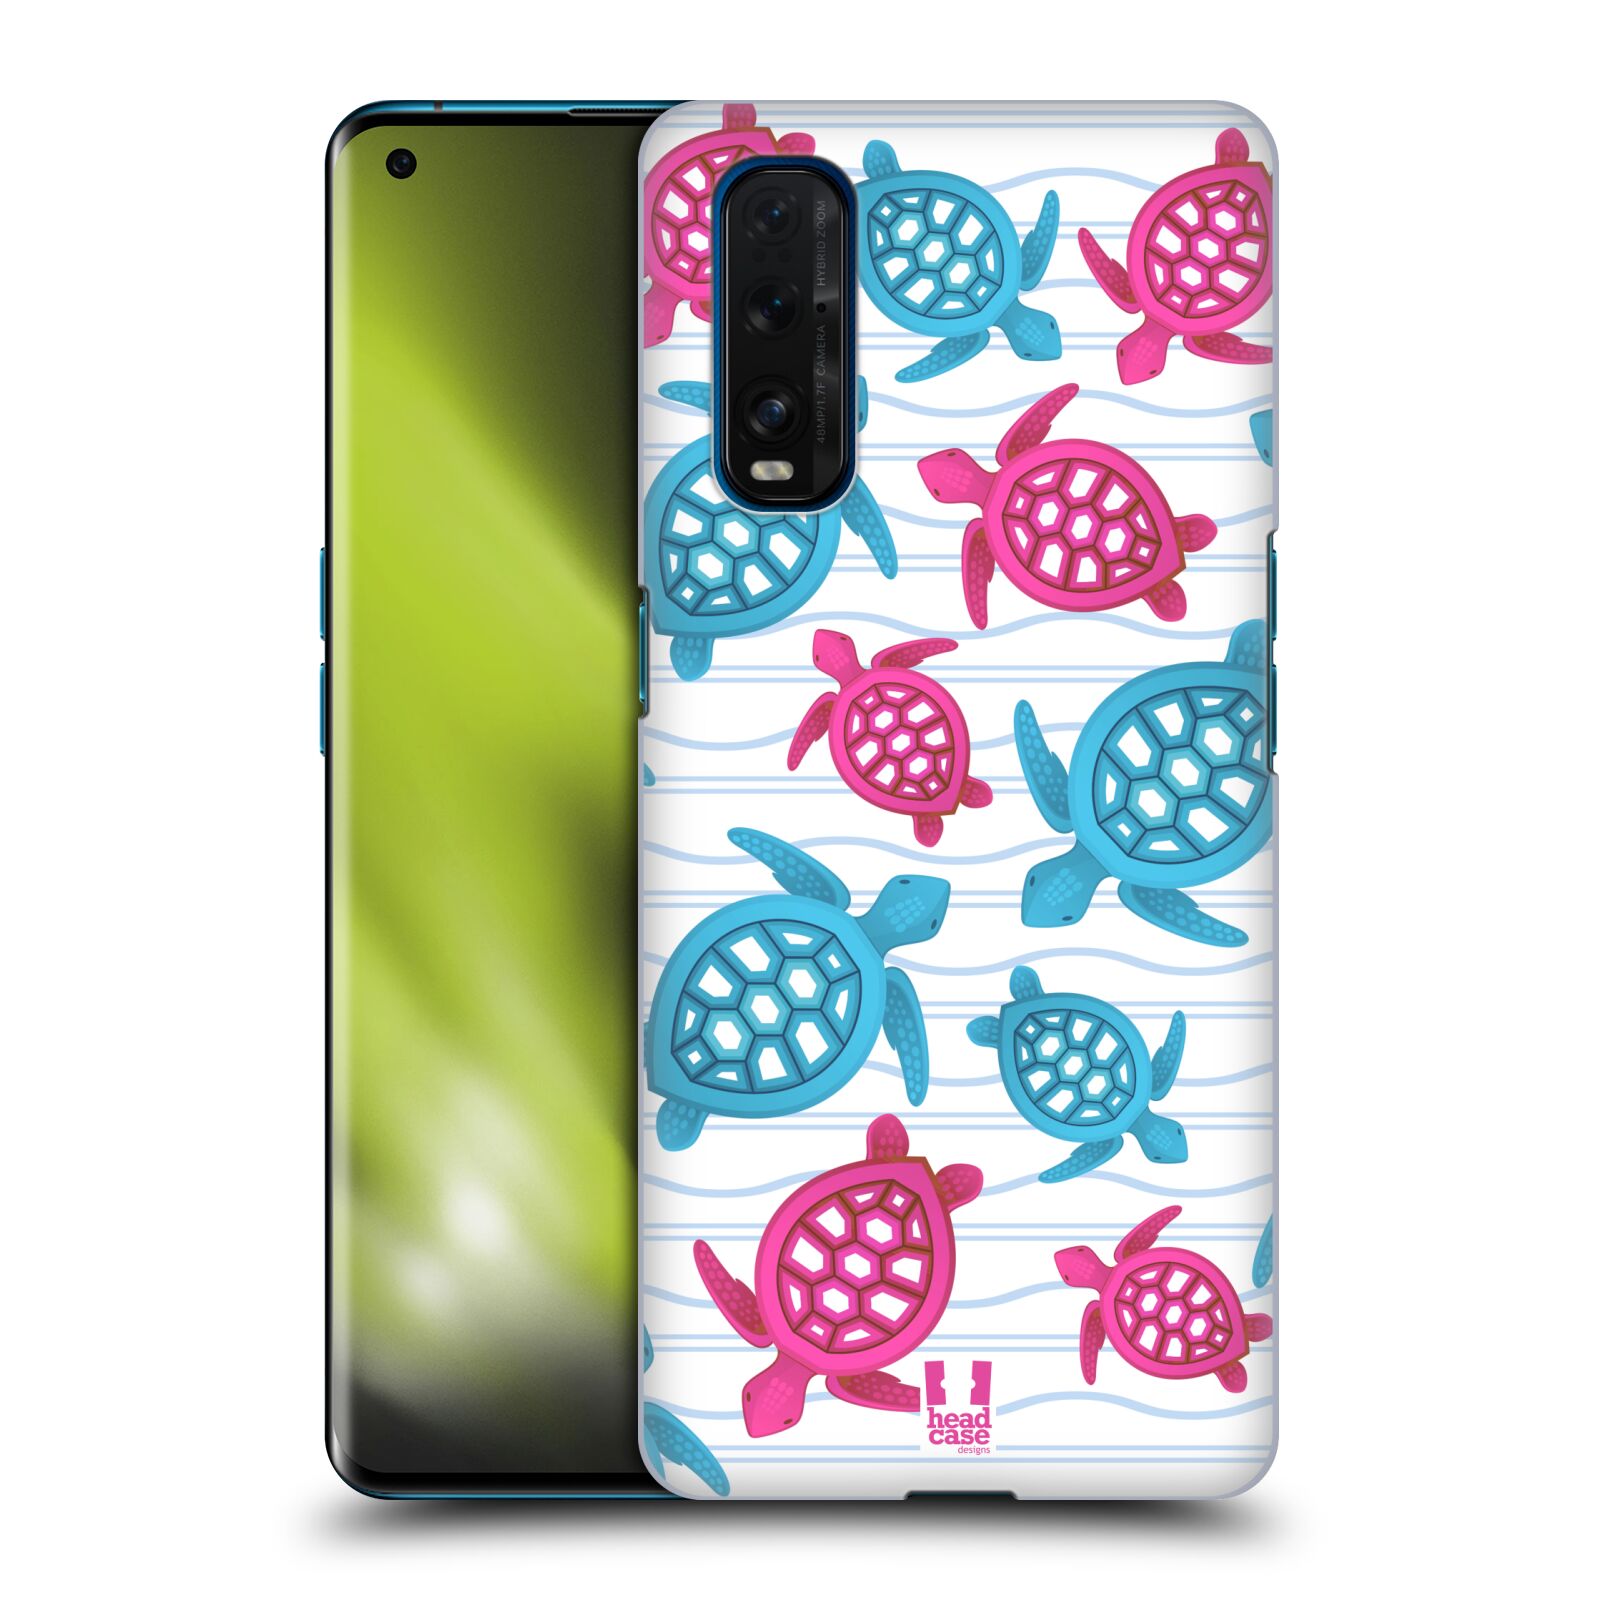 Zadní obal pro mobil Oppo Find X2 - HEAD CASE - kreslený mořský vzor želvičky